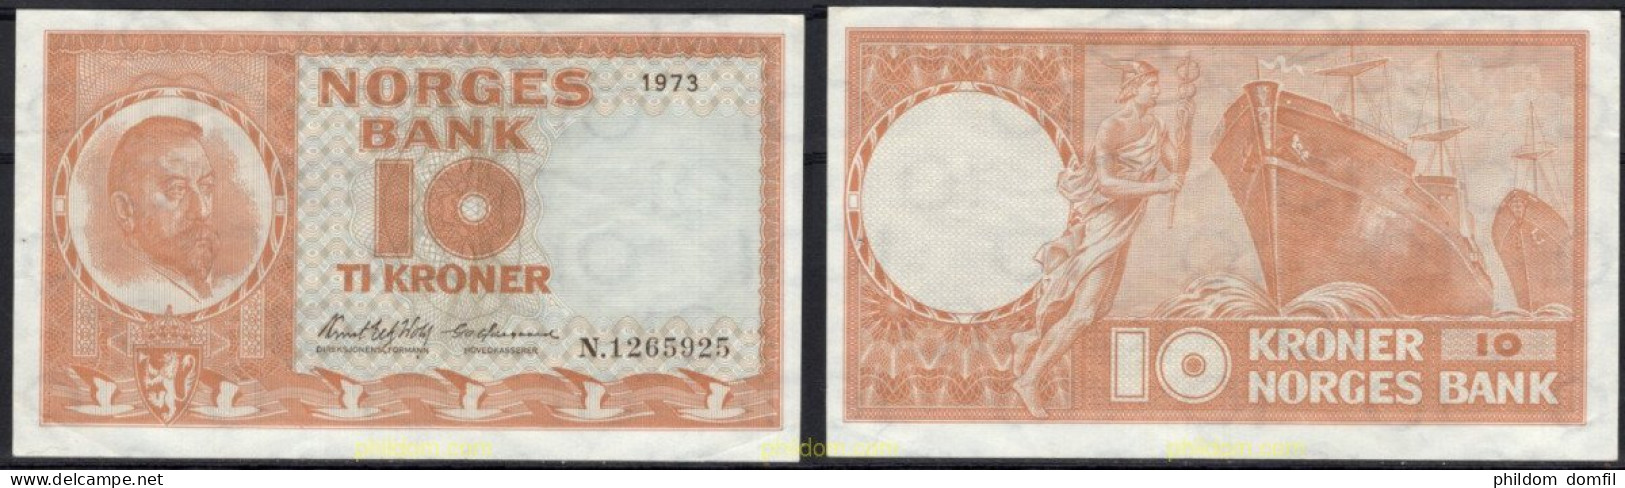 8428 NORUEGA 1973 NORWAY 10 KRONER 1973 - Norway